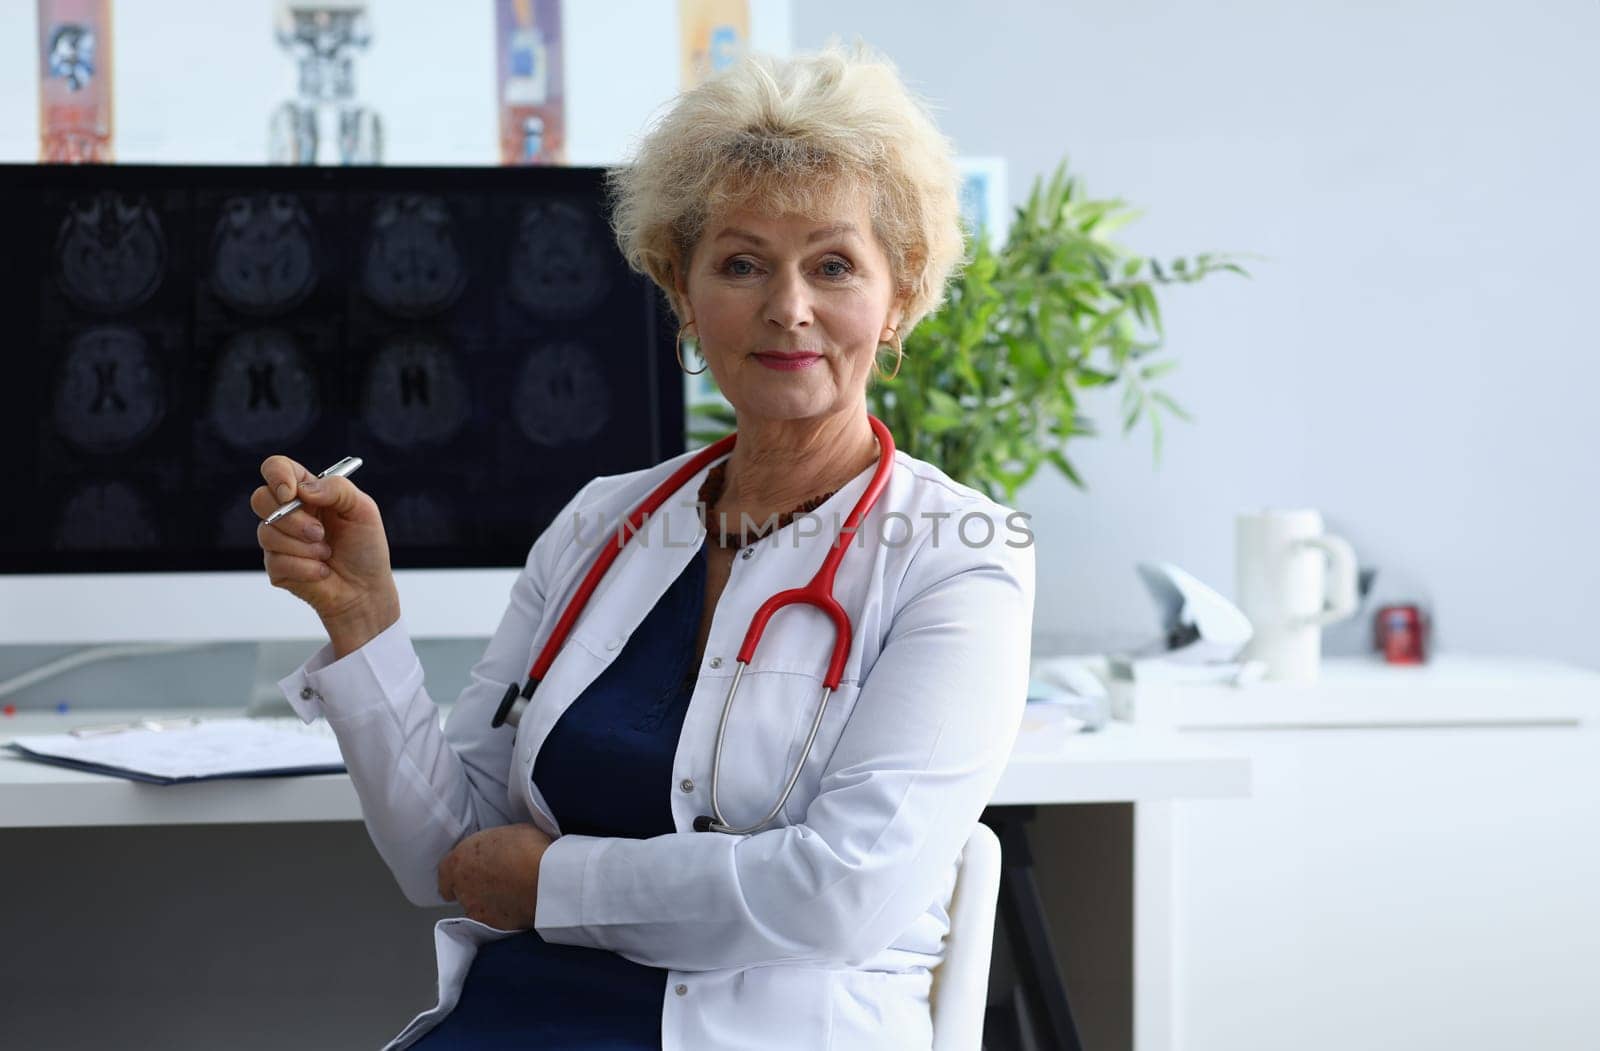 Portrait of elderly woman doctor in field of medicine by kuprevich